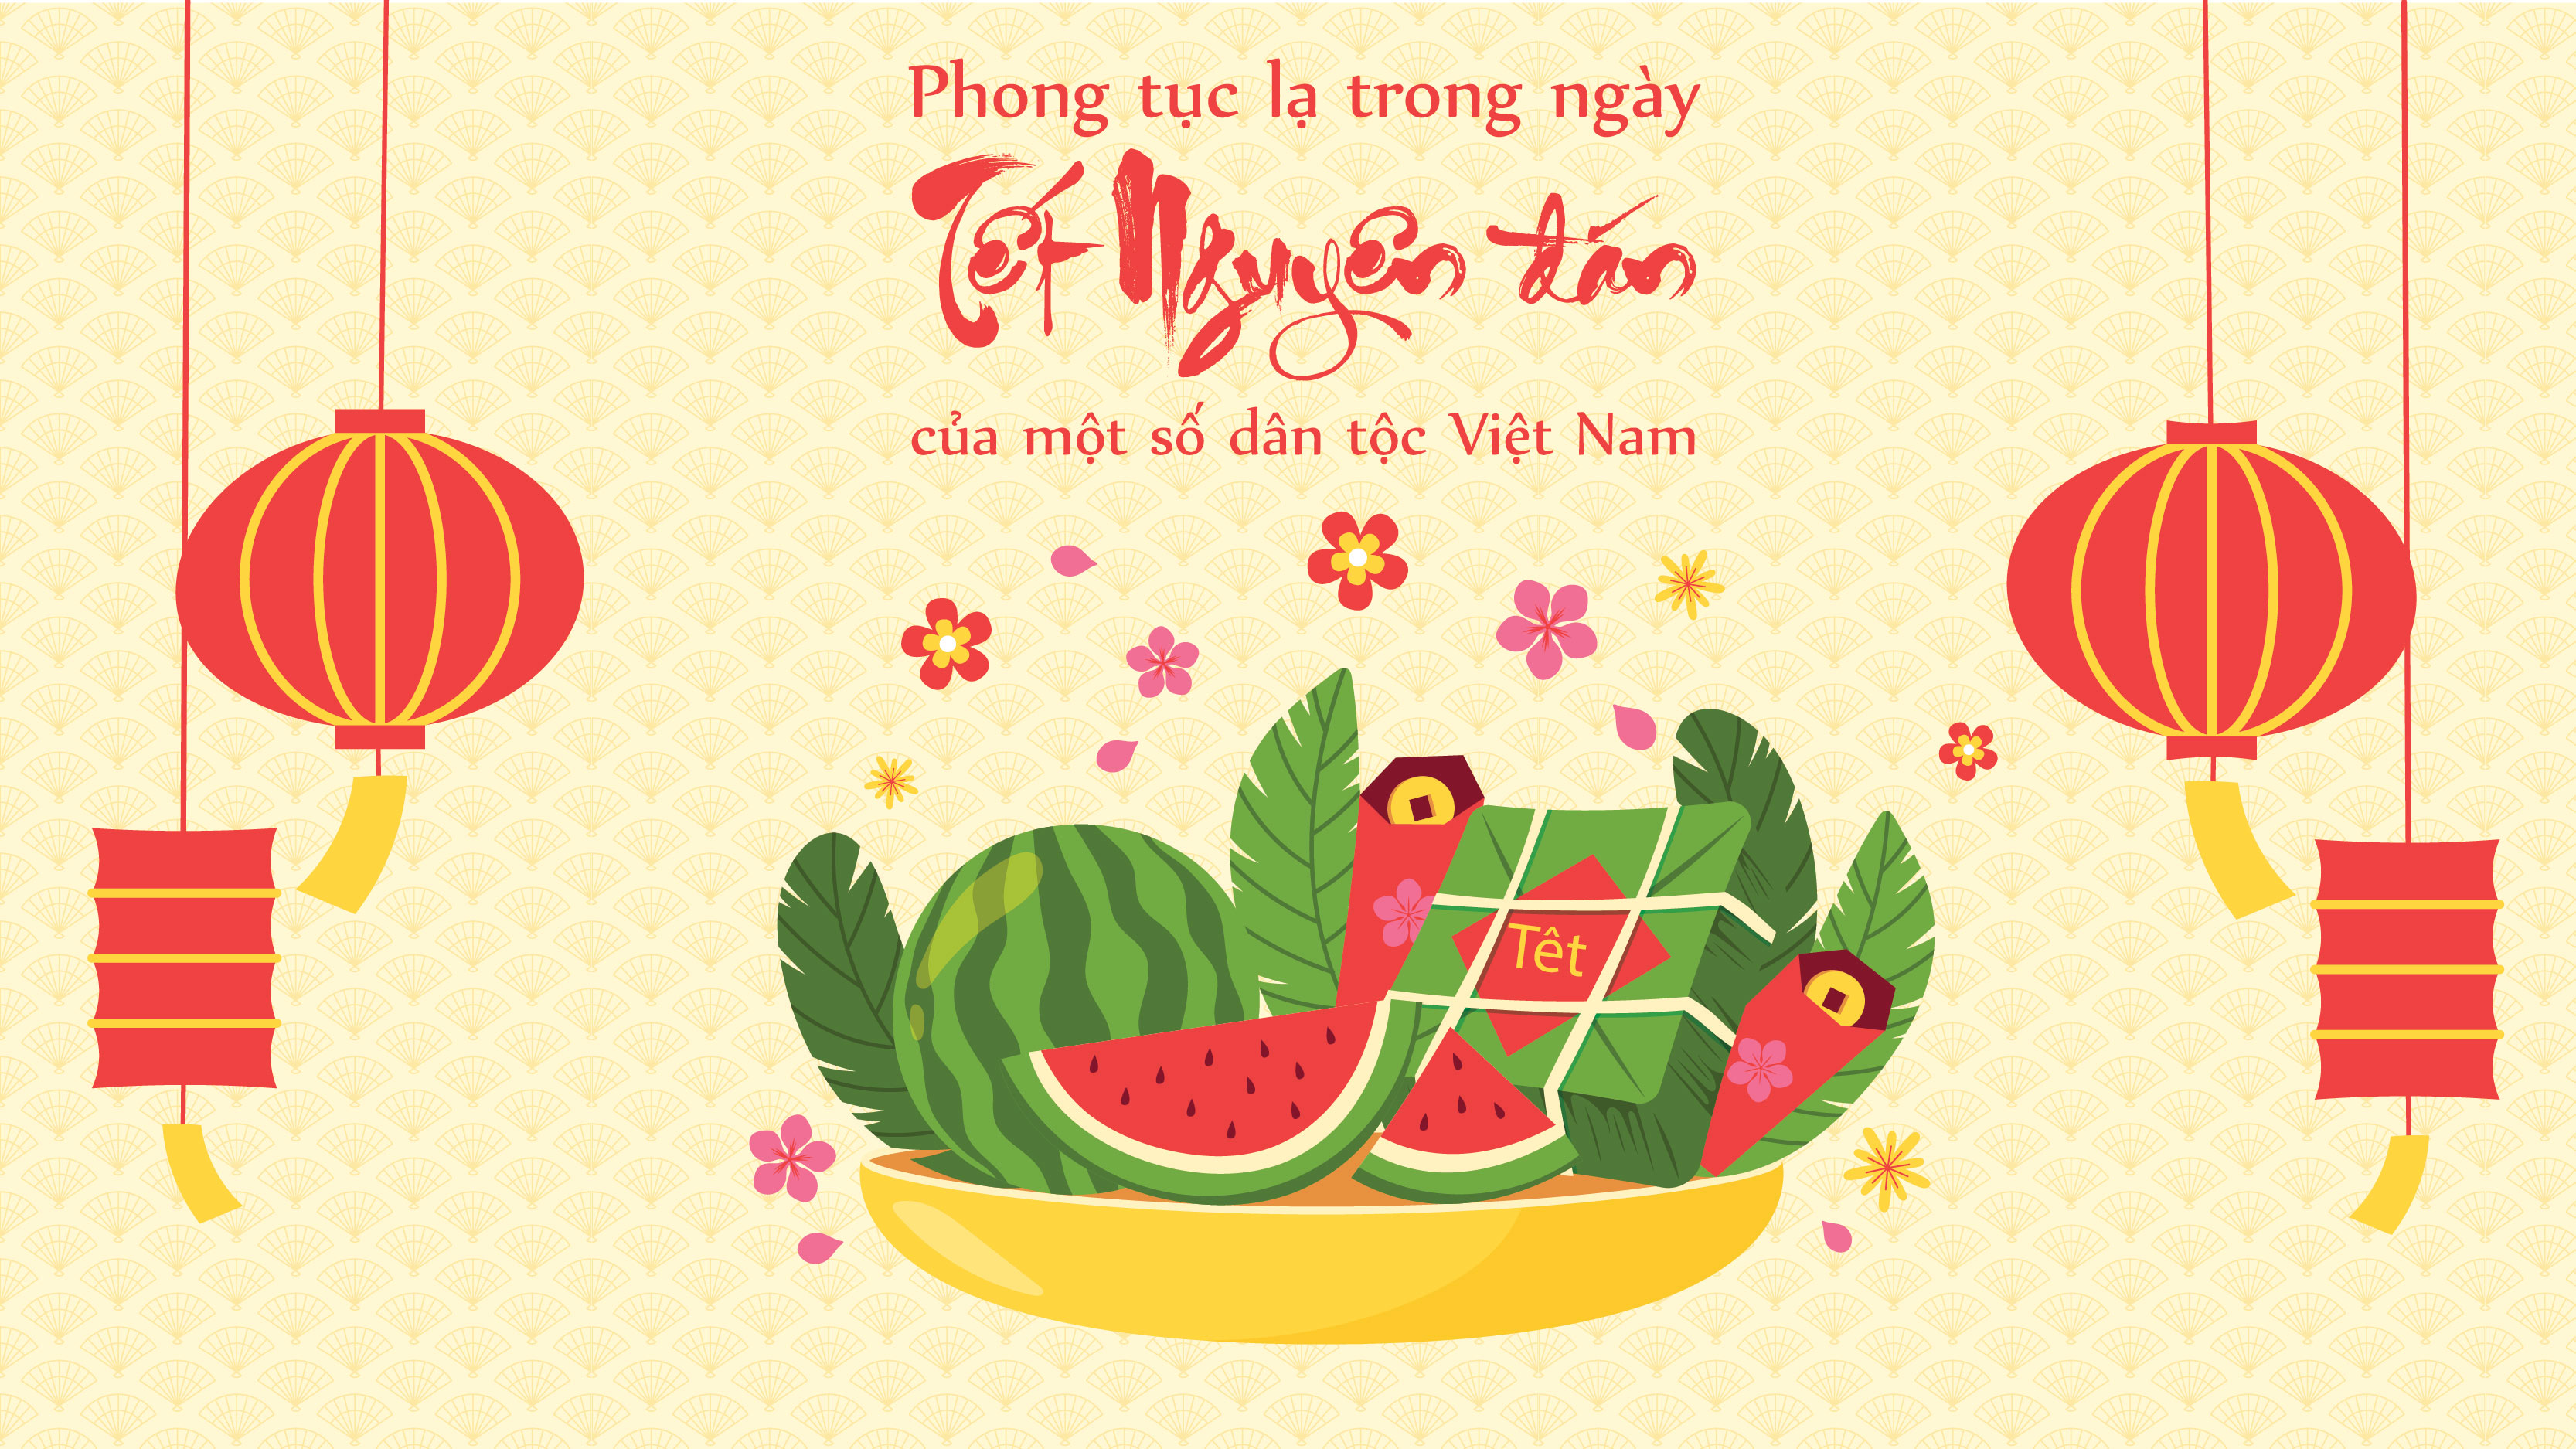 Phong tục lạ trong ngày Tết Nguyên đán của một số dân tộc Việt Nam